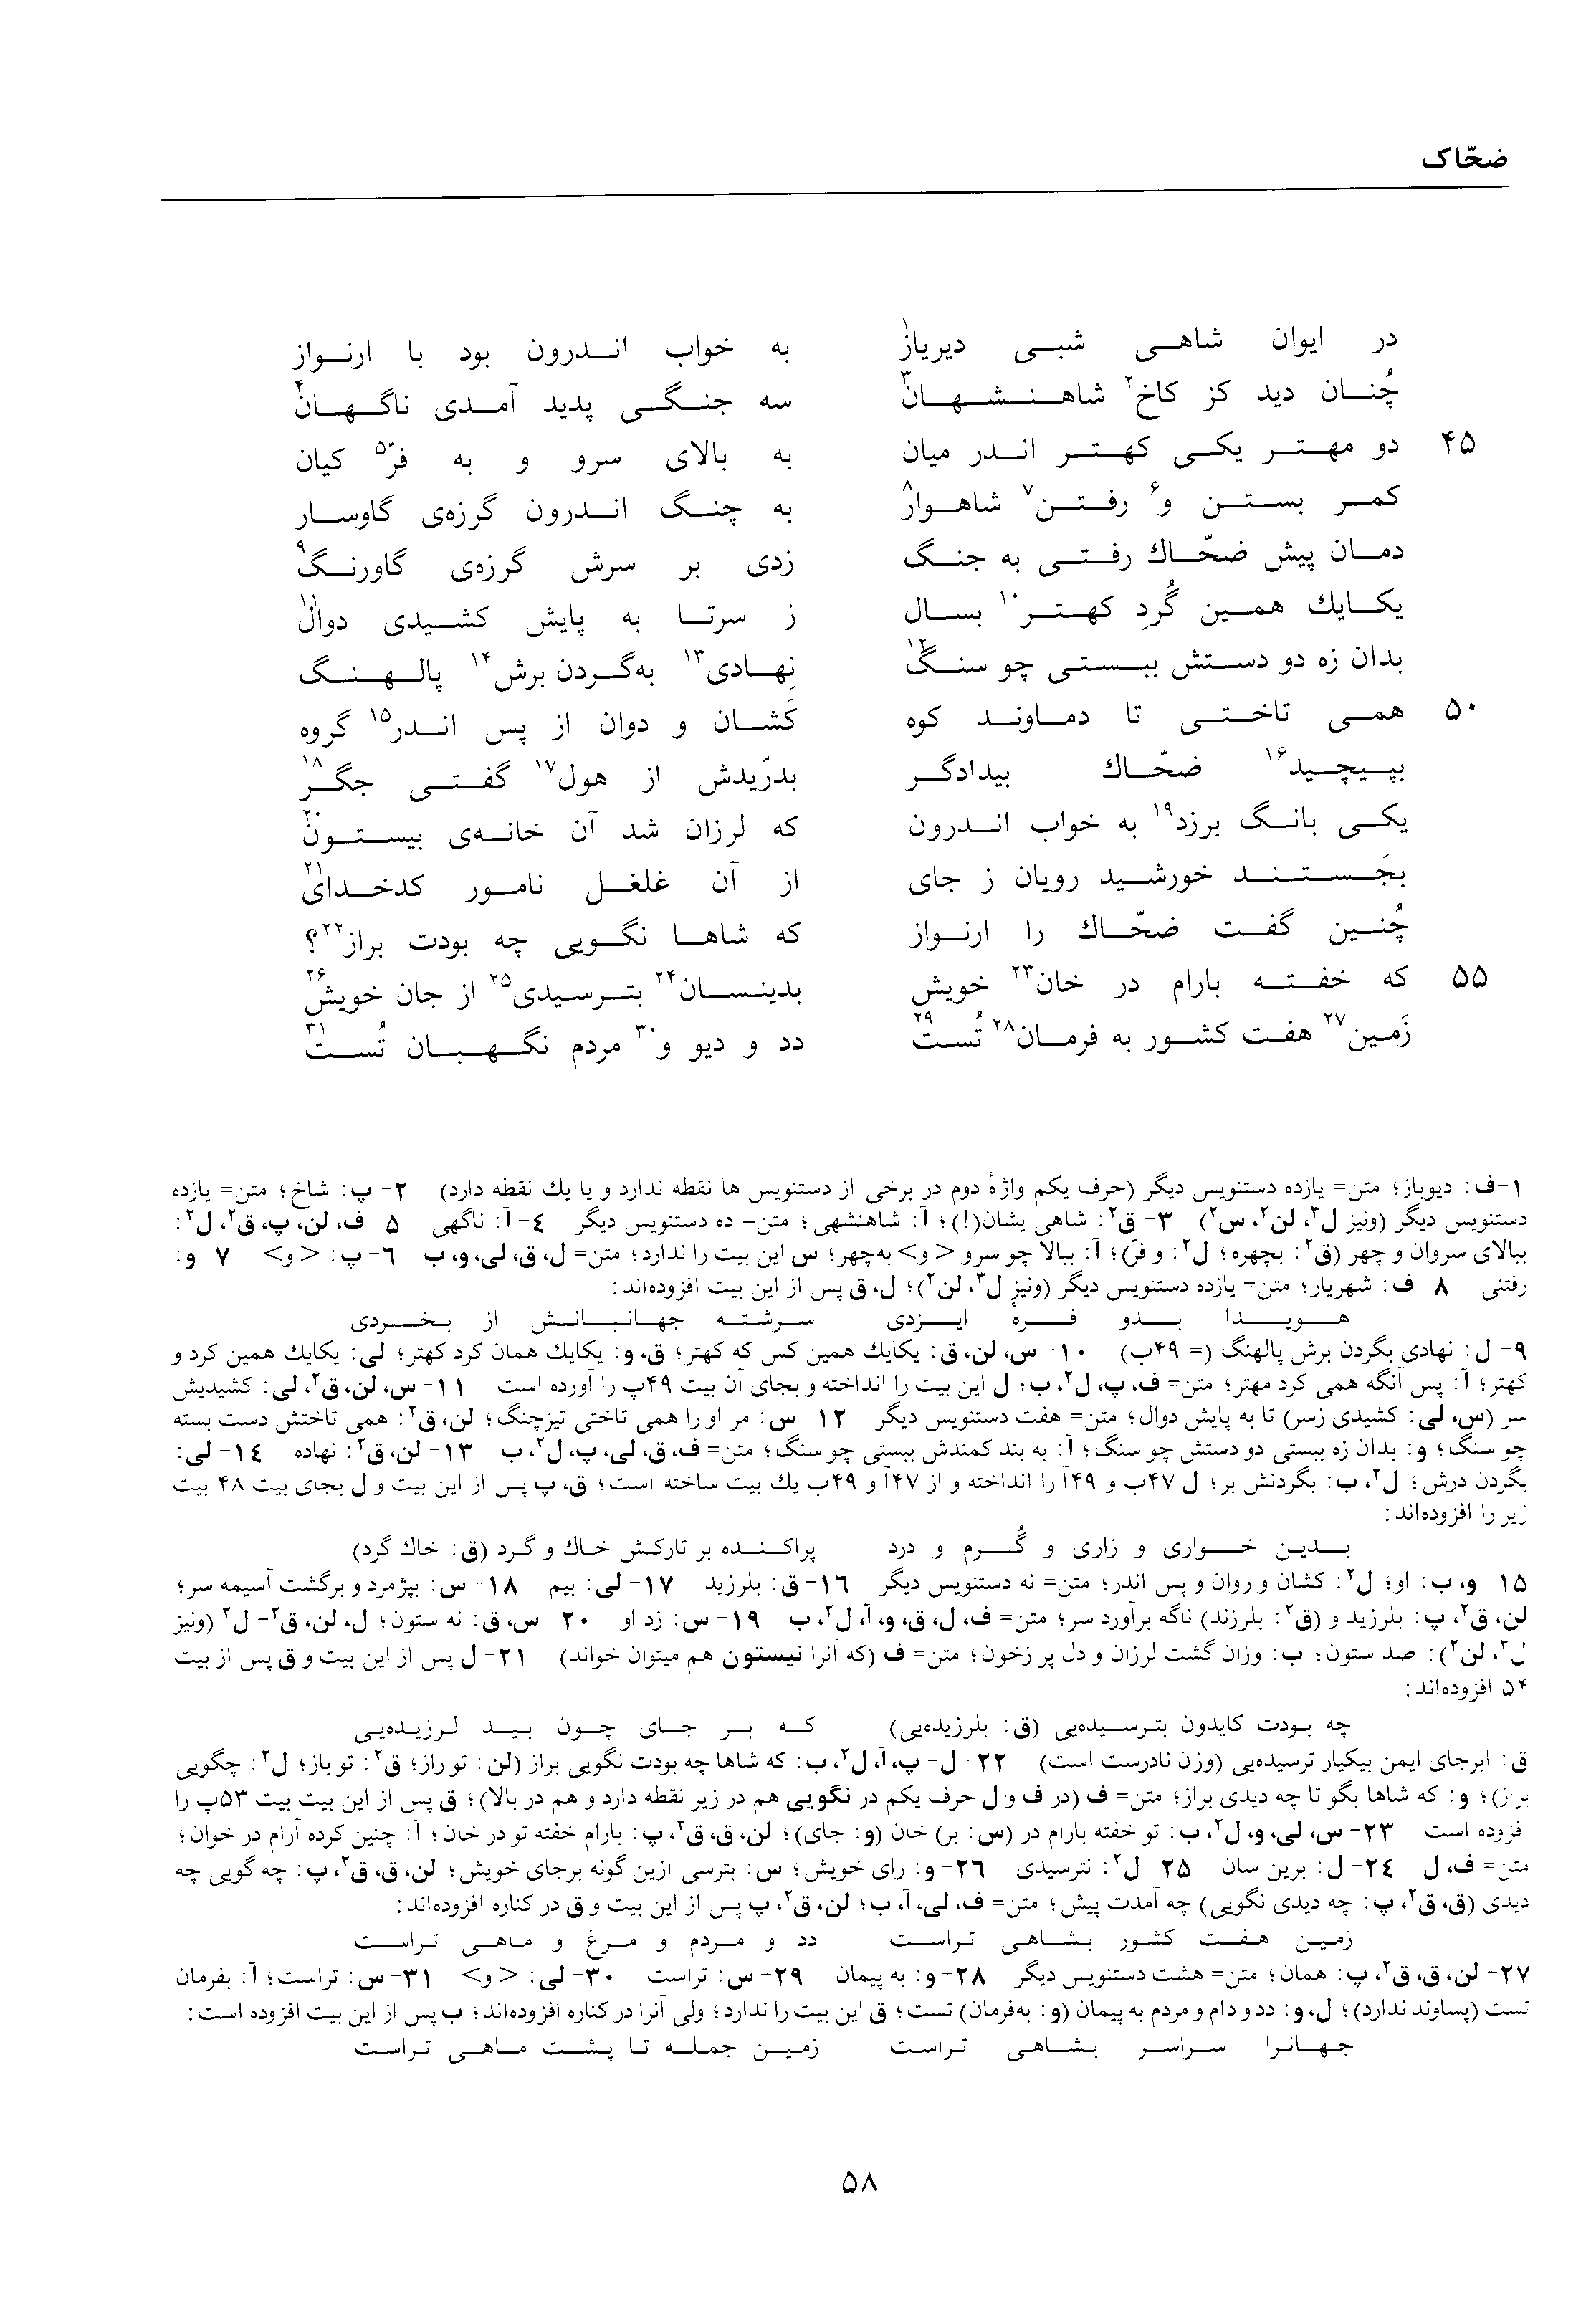 vol. 1, p. 58